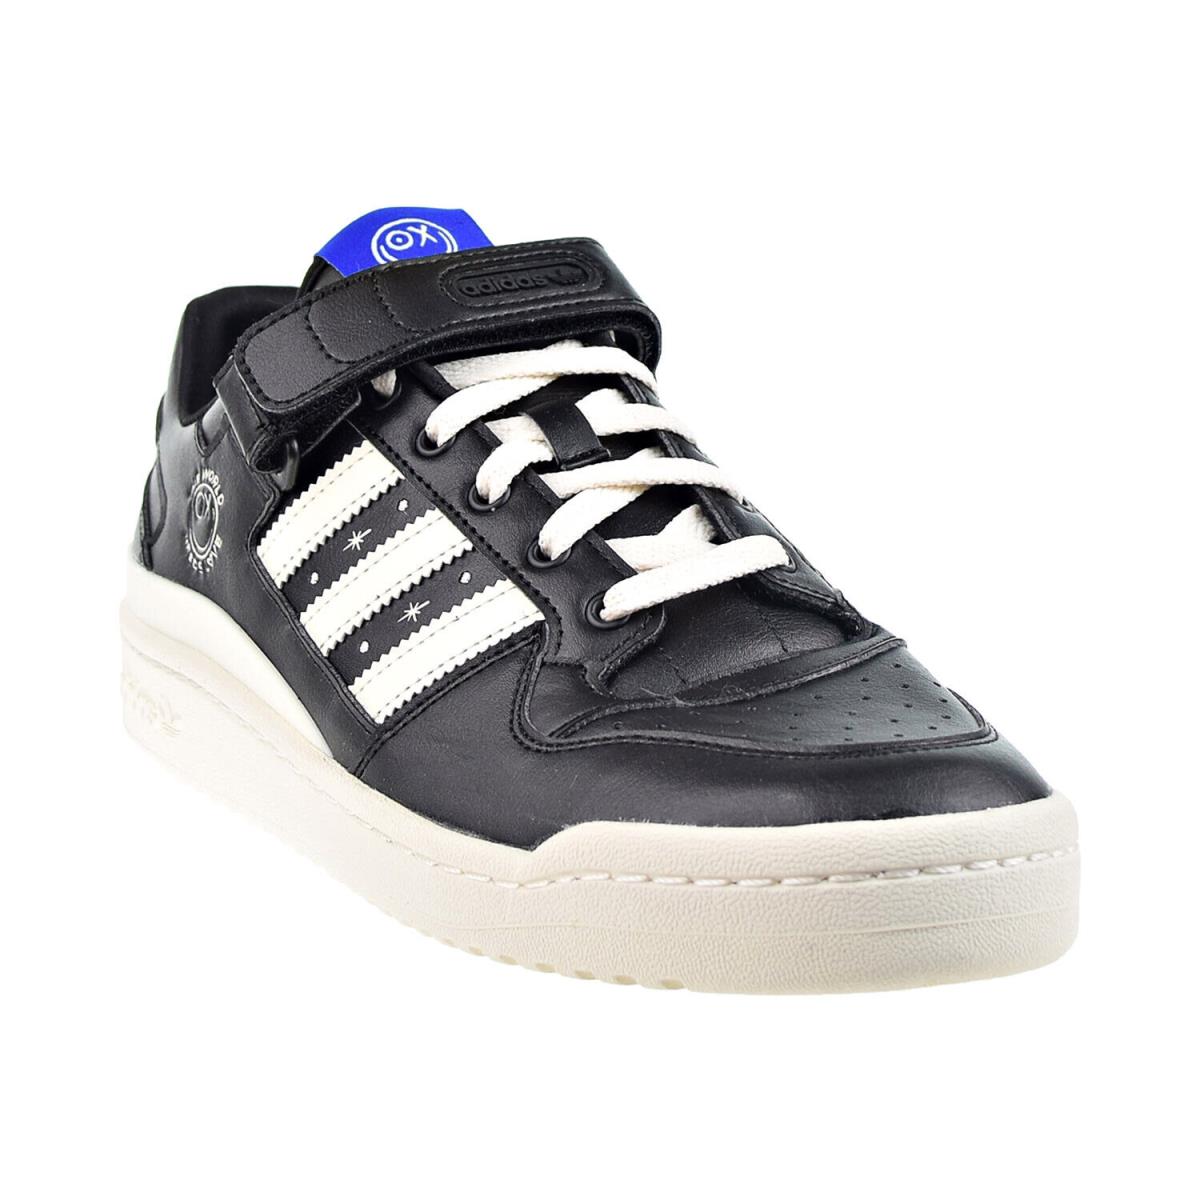 Adidas Forum Low Andr Saraiva Men`s Shoes Black-cream-white GZ2205